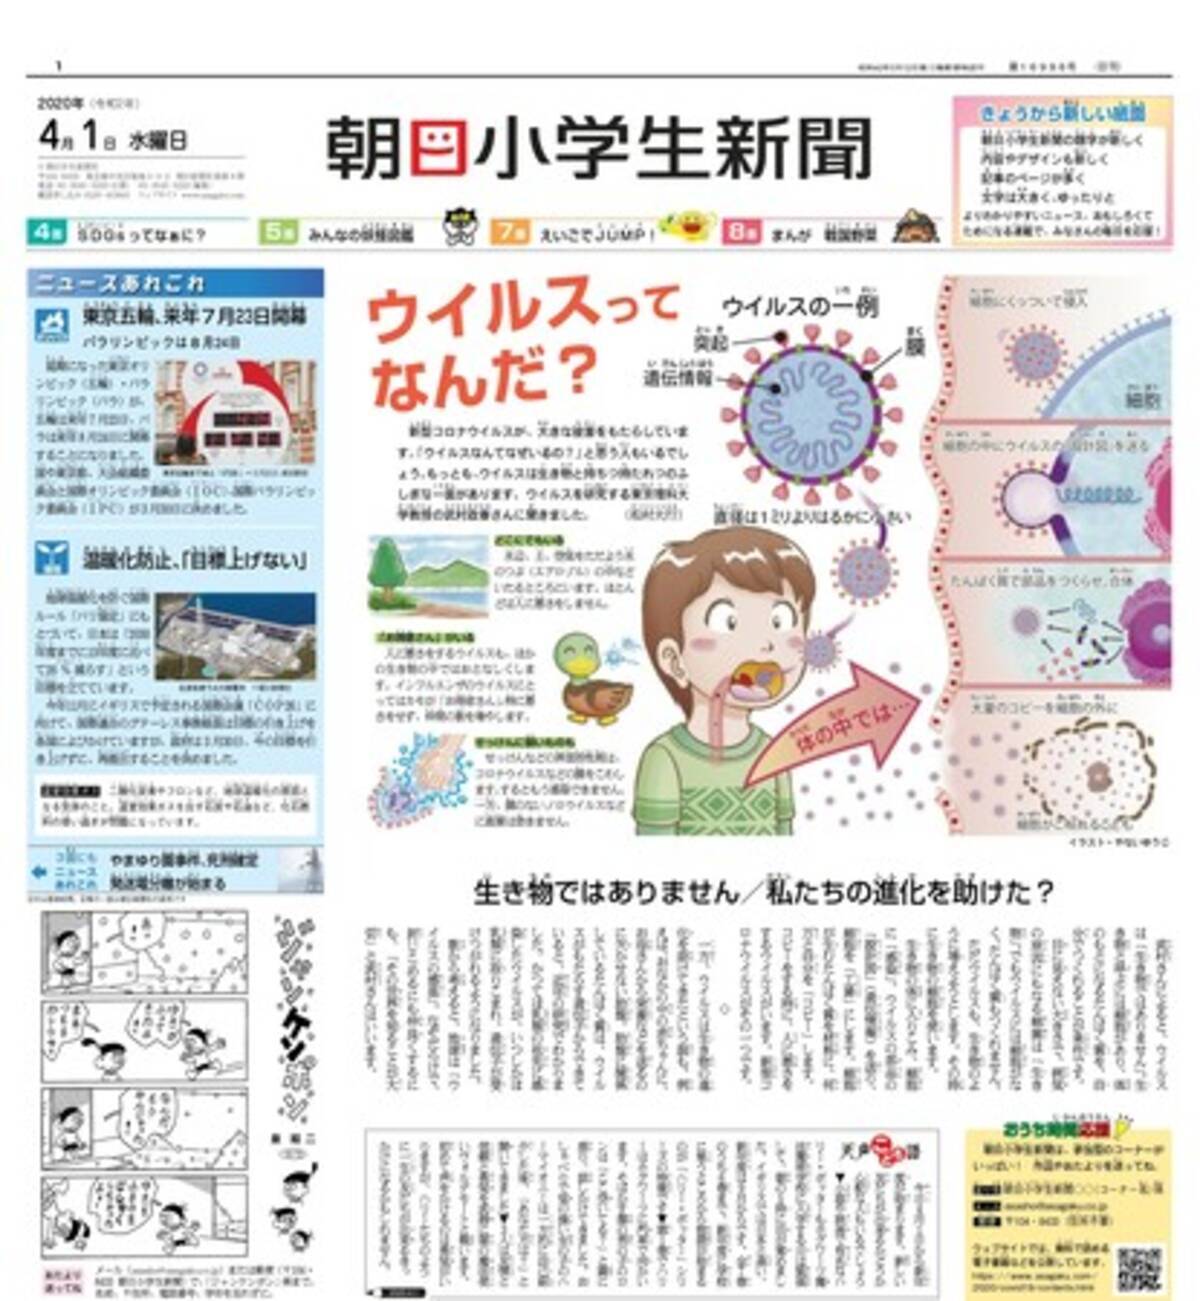 紙面レイアウトや内容の変化に注目 朝日小学生新聞 がリニューアル 年4月9日 エキサイトニュース